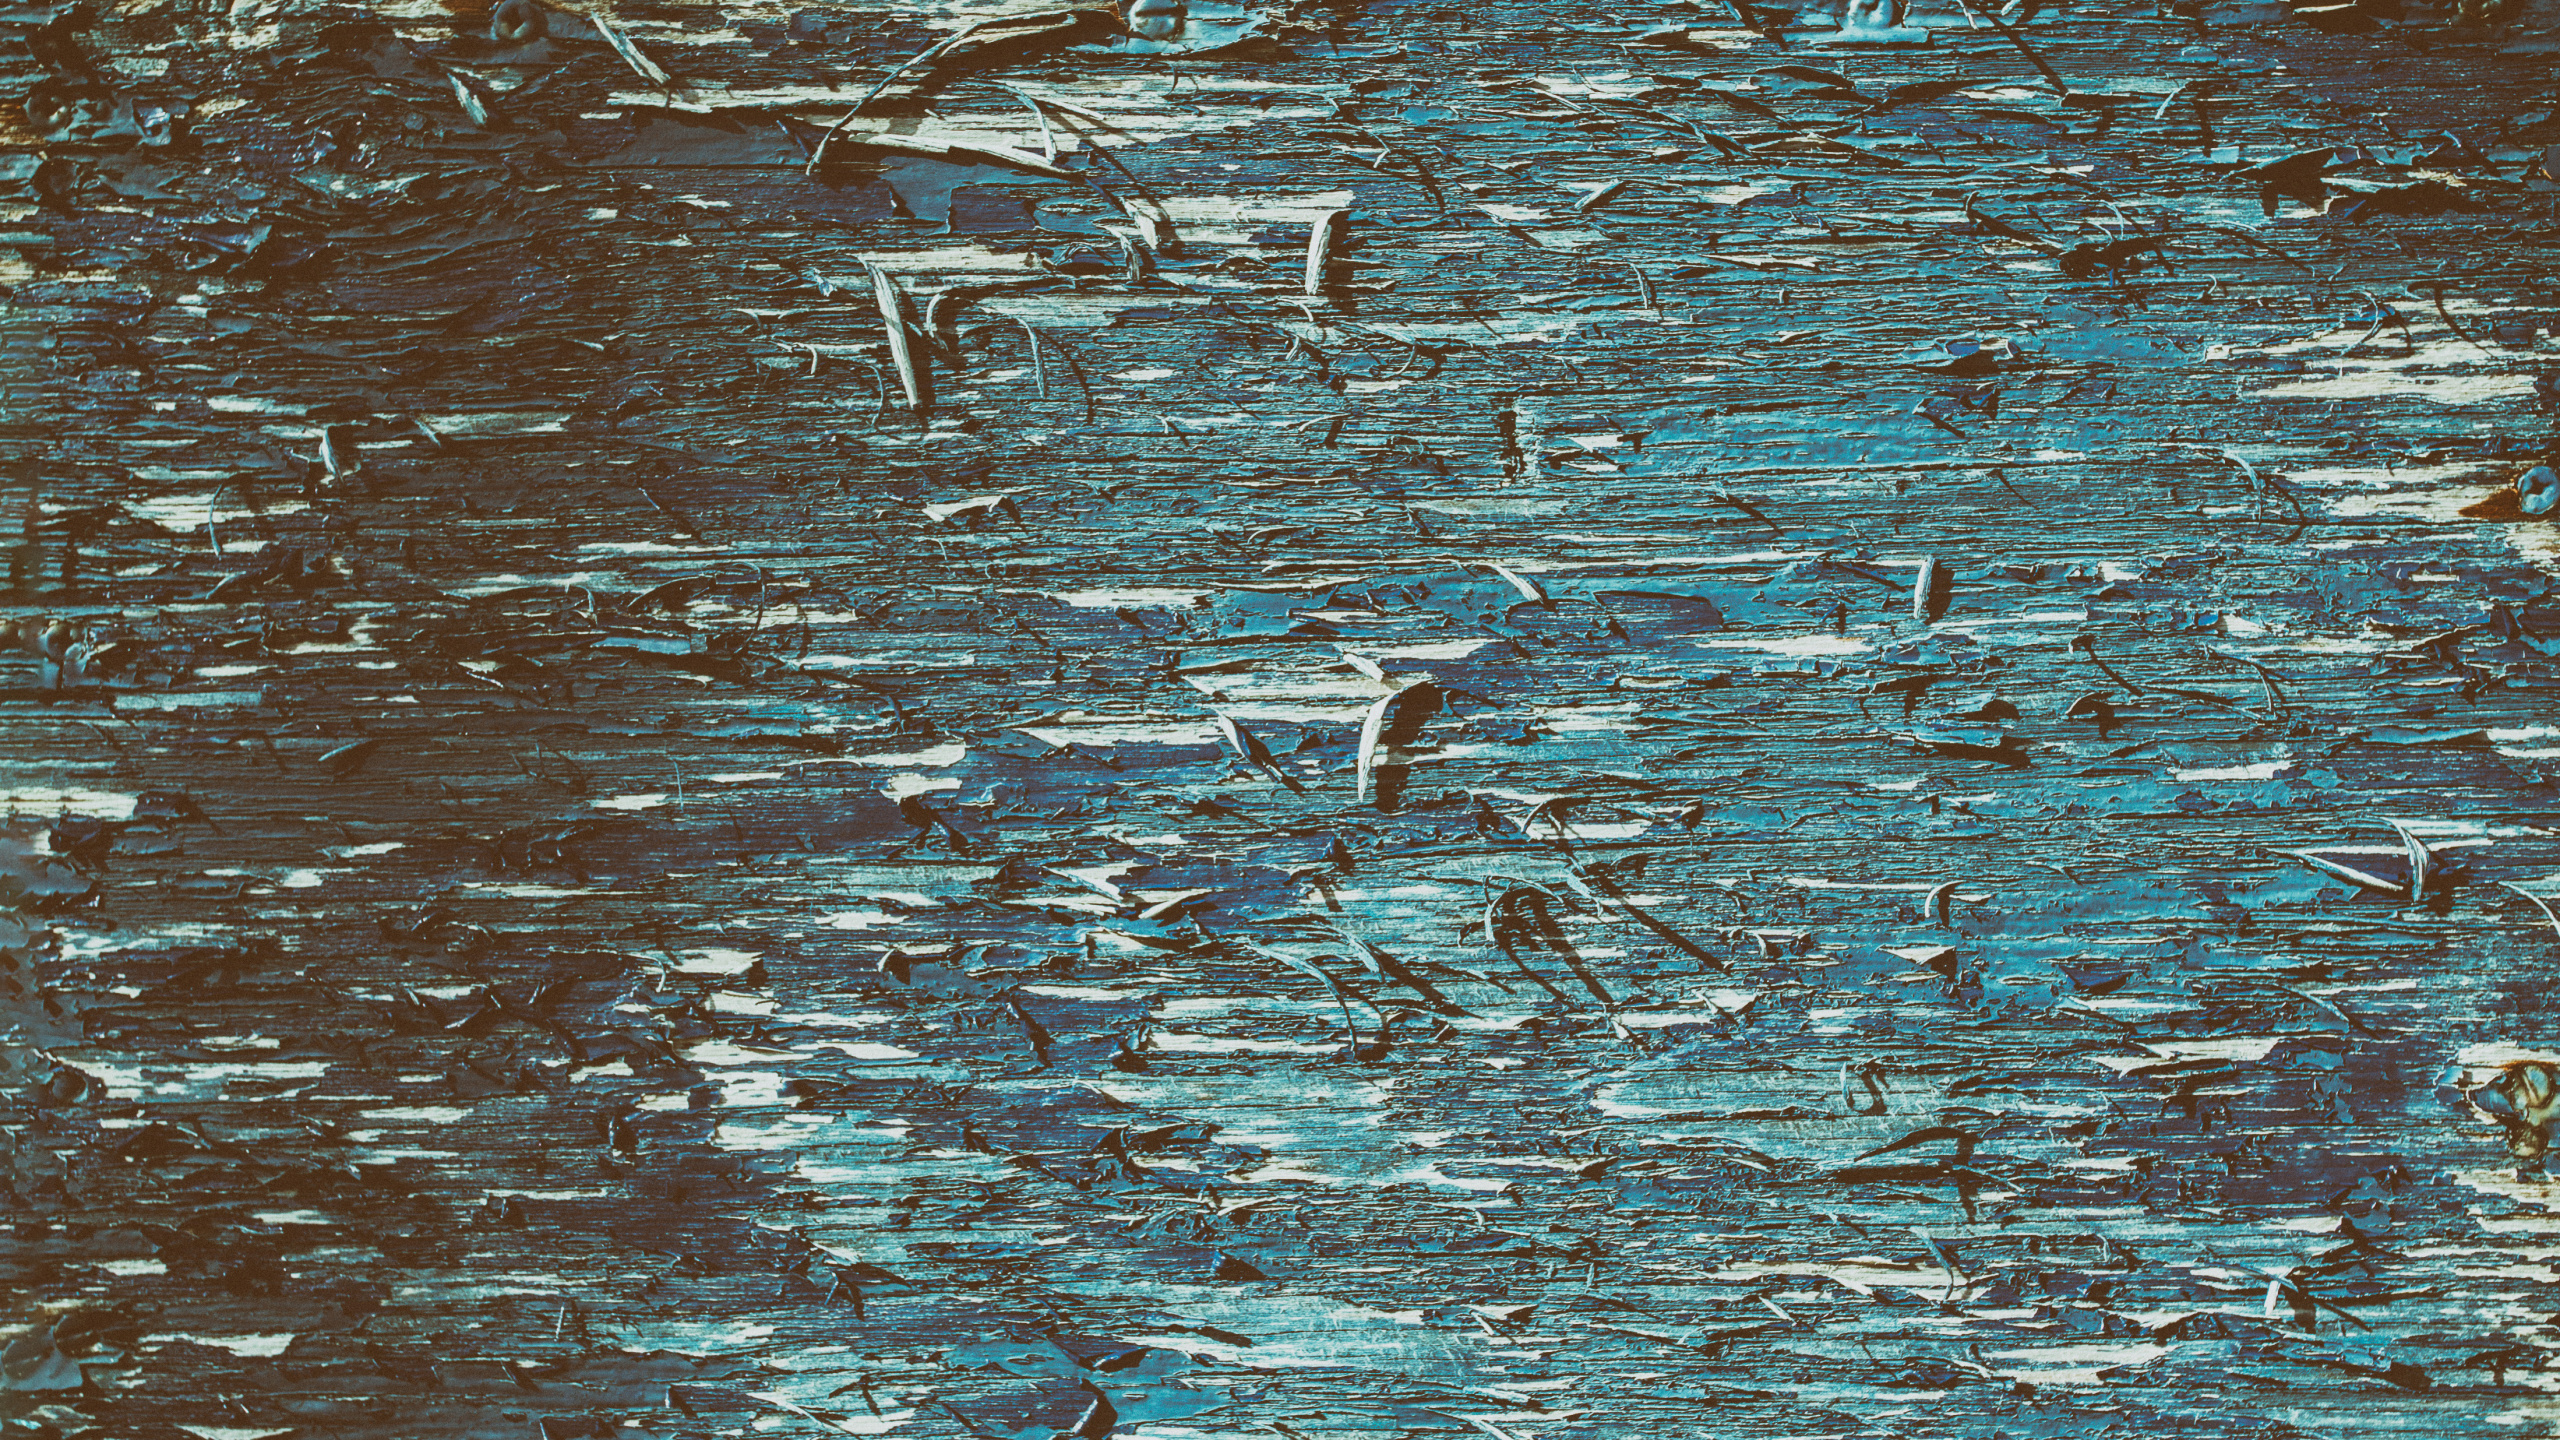 Oiseaux Blancs et Noirs Sur L'eau. Wallpaper in 2560x1440 Resolution